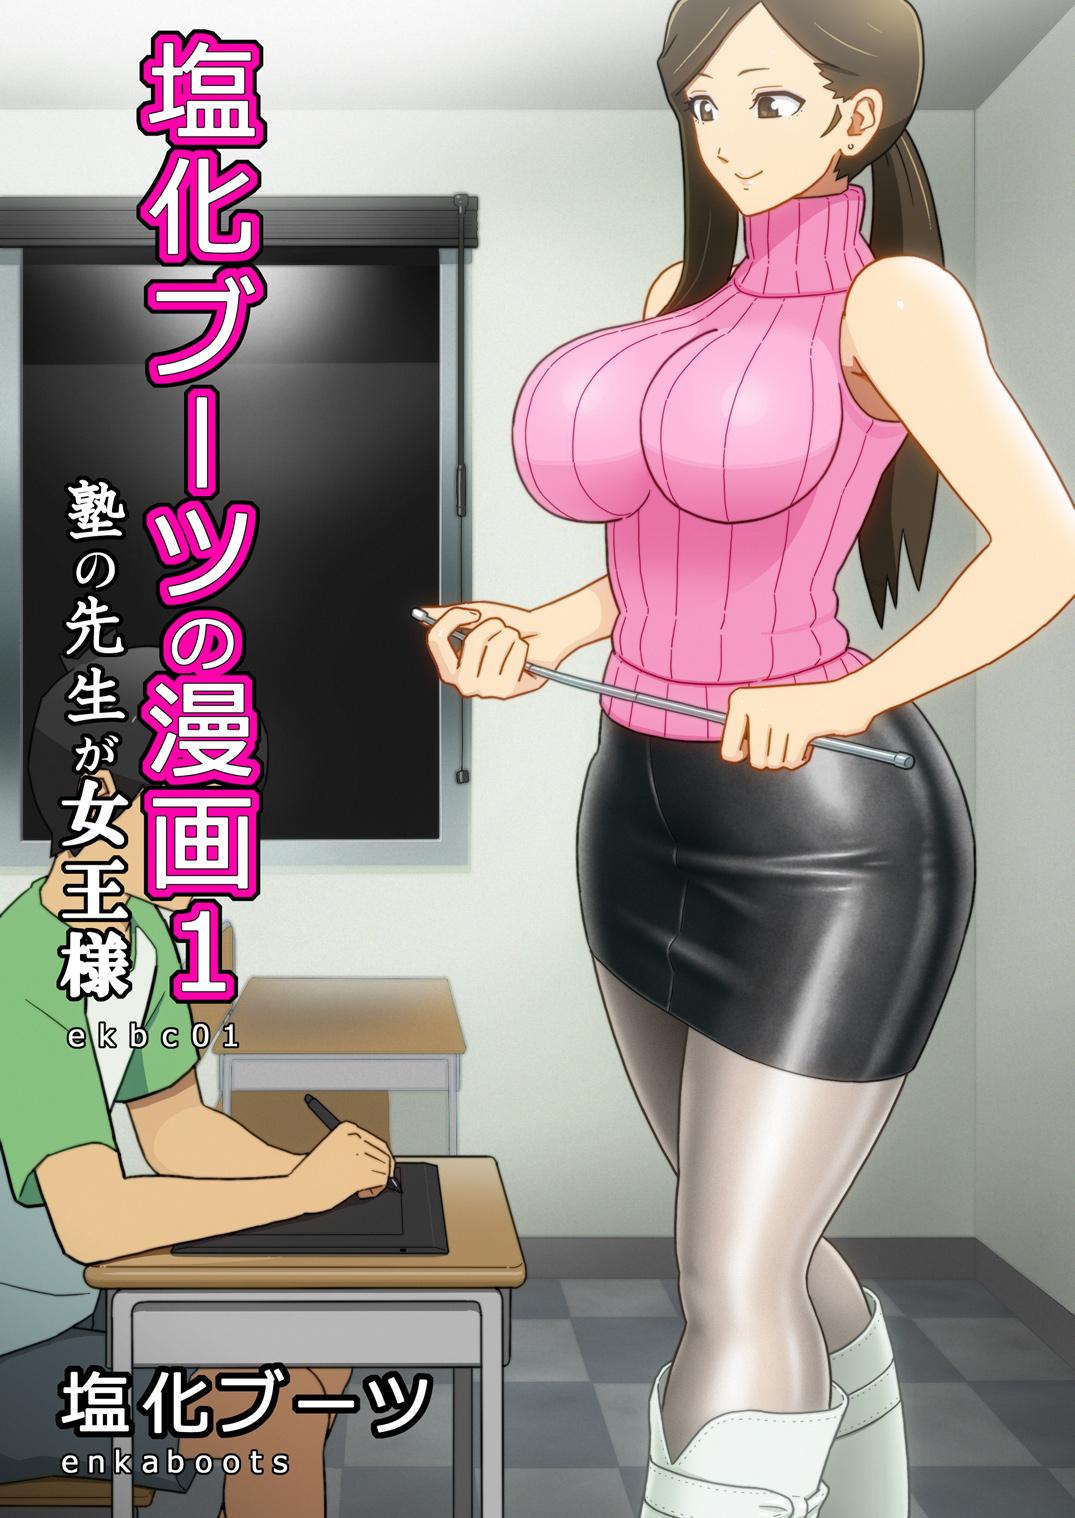 [Enka Boots] Enka Boots no Manga 1 - Juku no Sensei ga Joou-sama V2.0 0